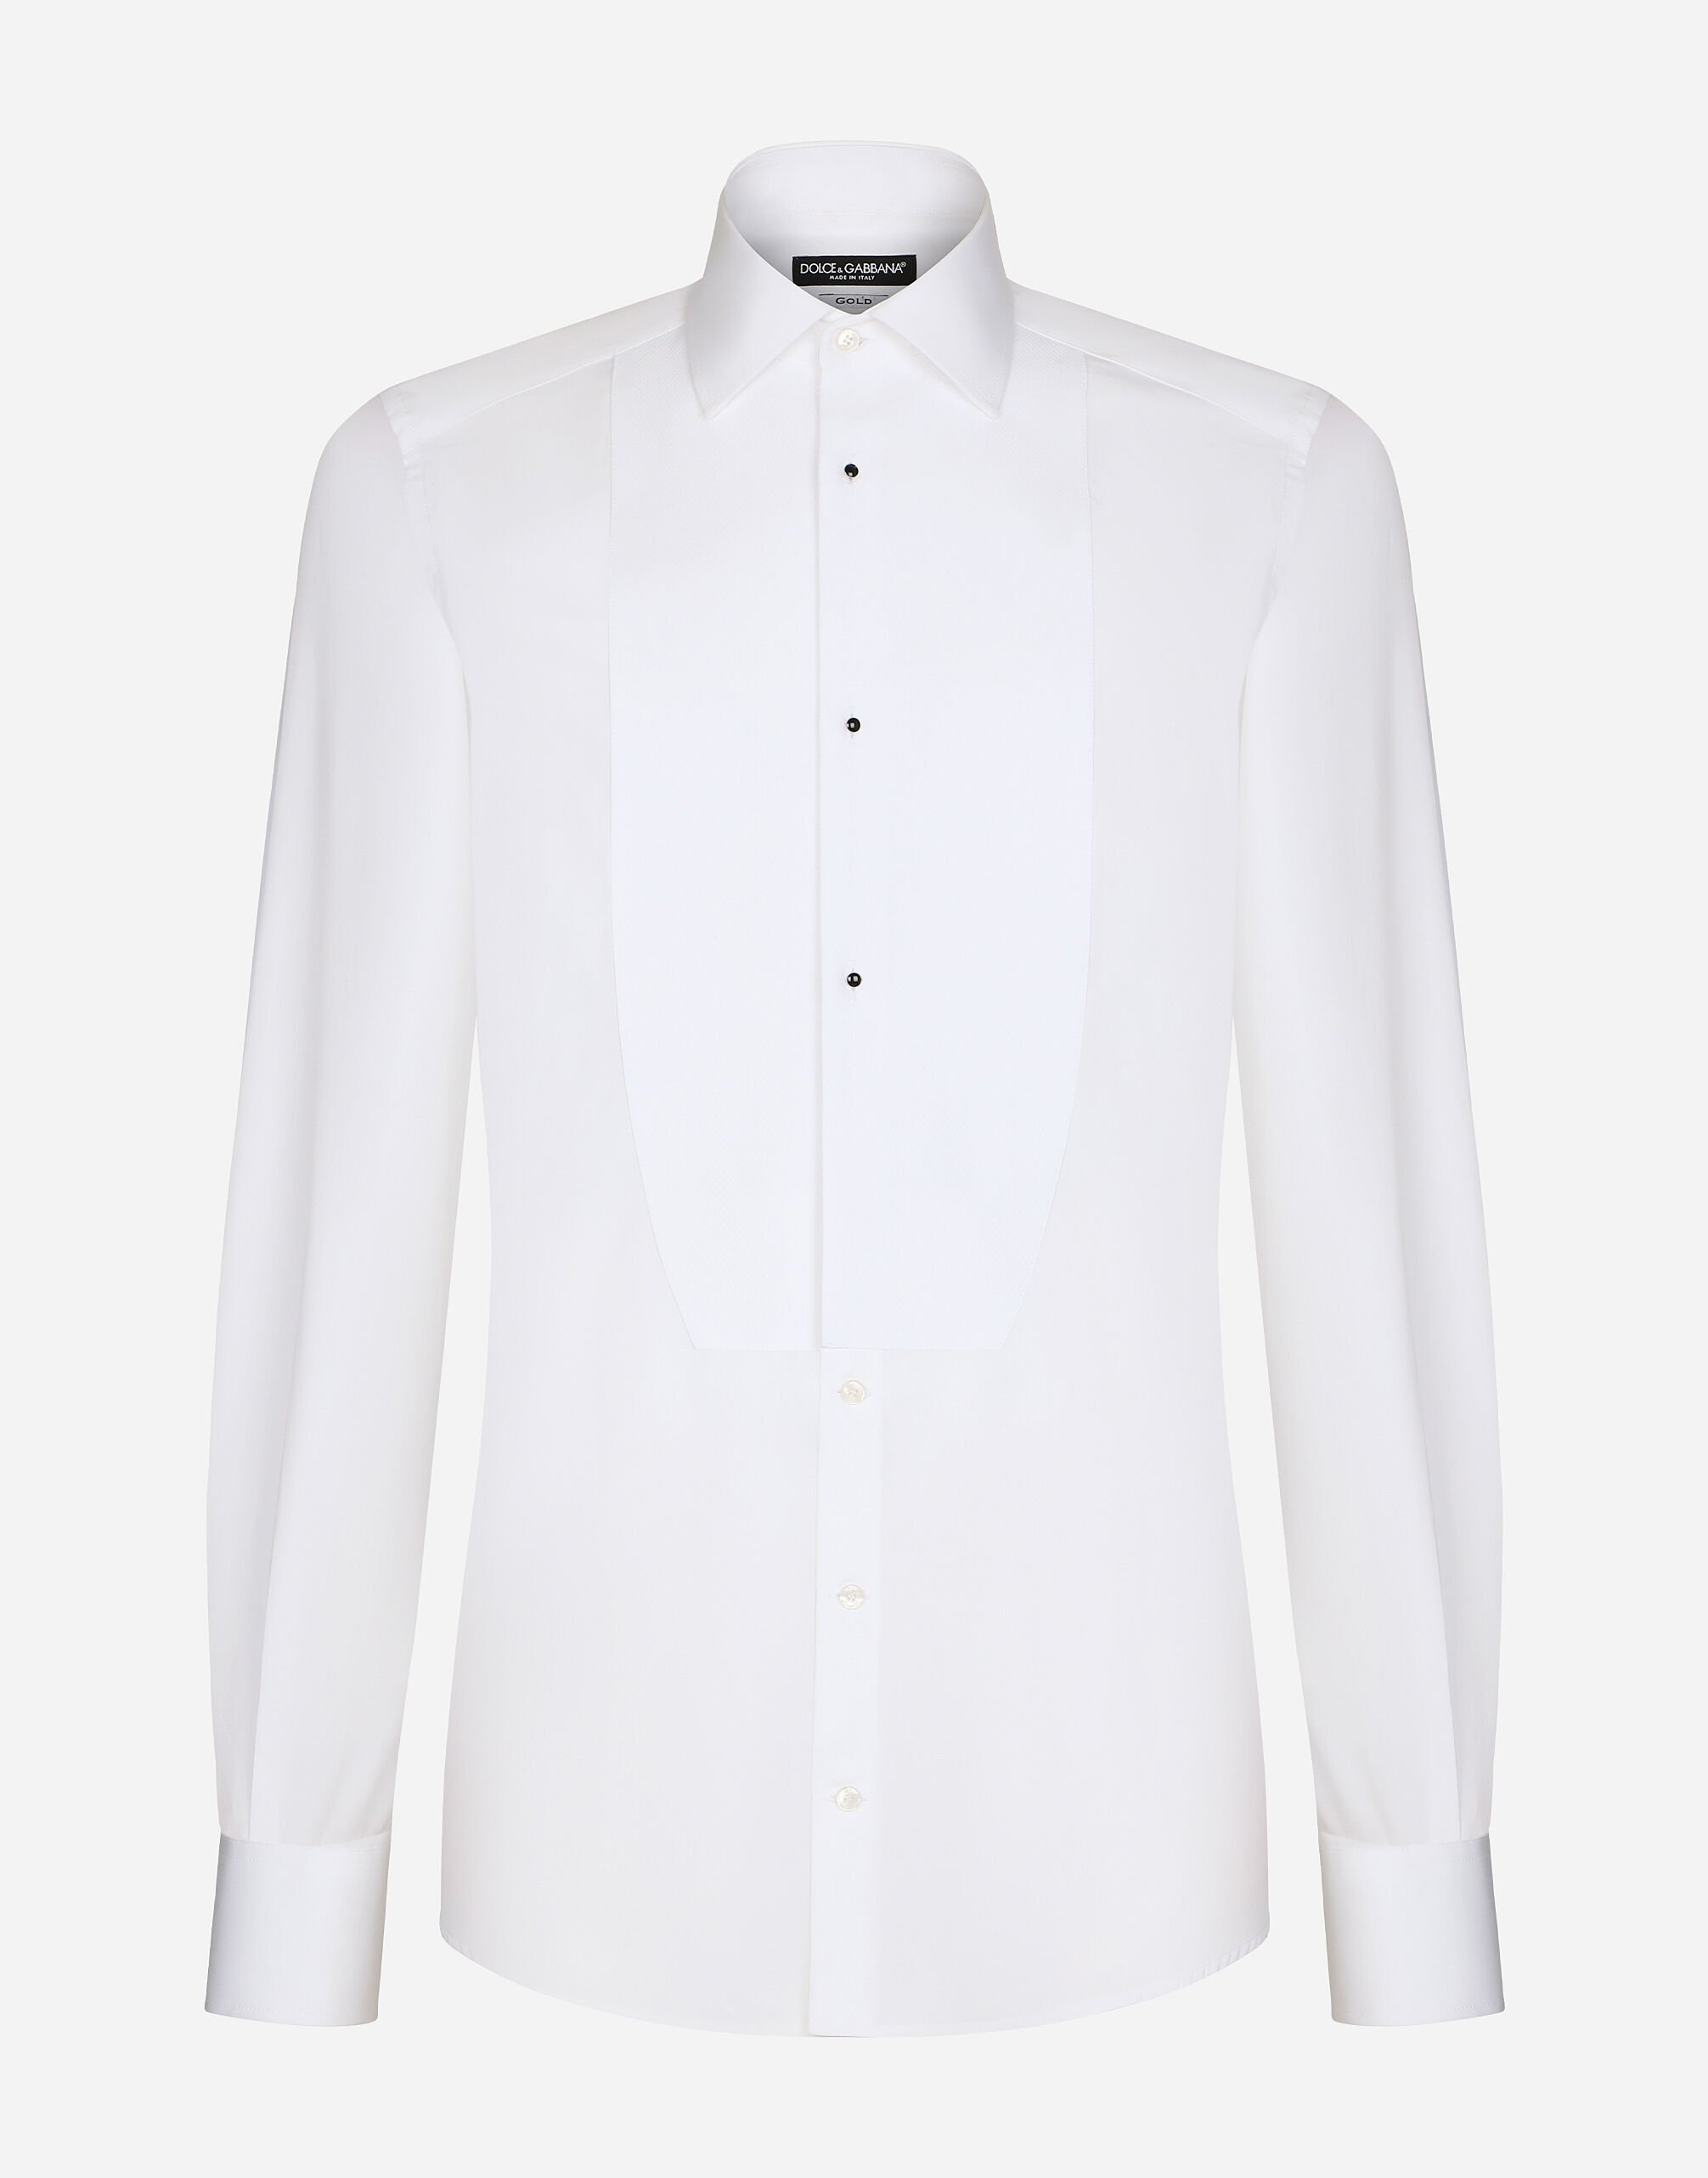 Dolce & Gabbana قميص توكسيدو من قطن بوبلين بقياس ذهبي أبيض G5EJ0TGG826